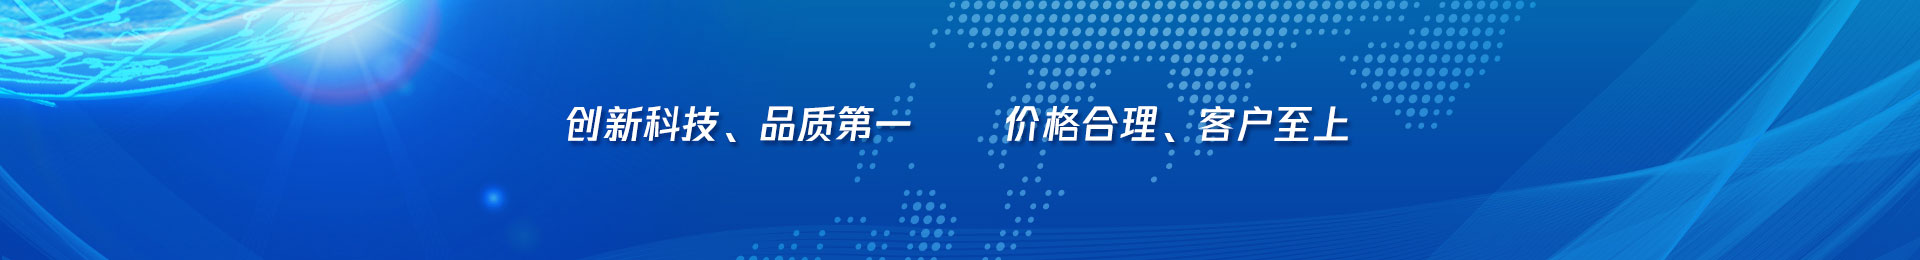 深圳市飞易讯通讯器材有限公司